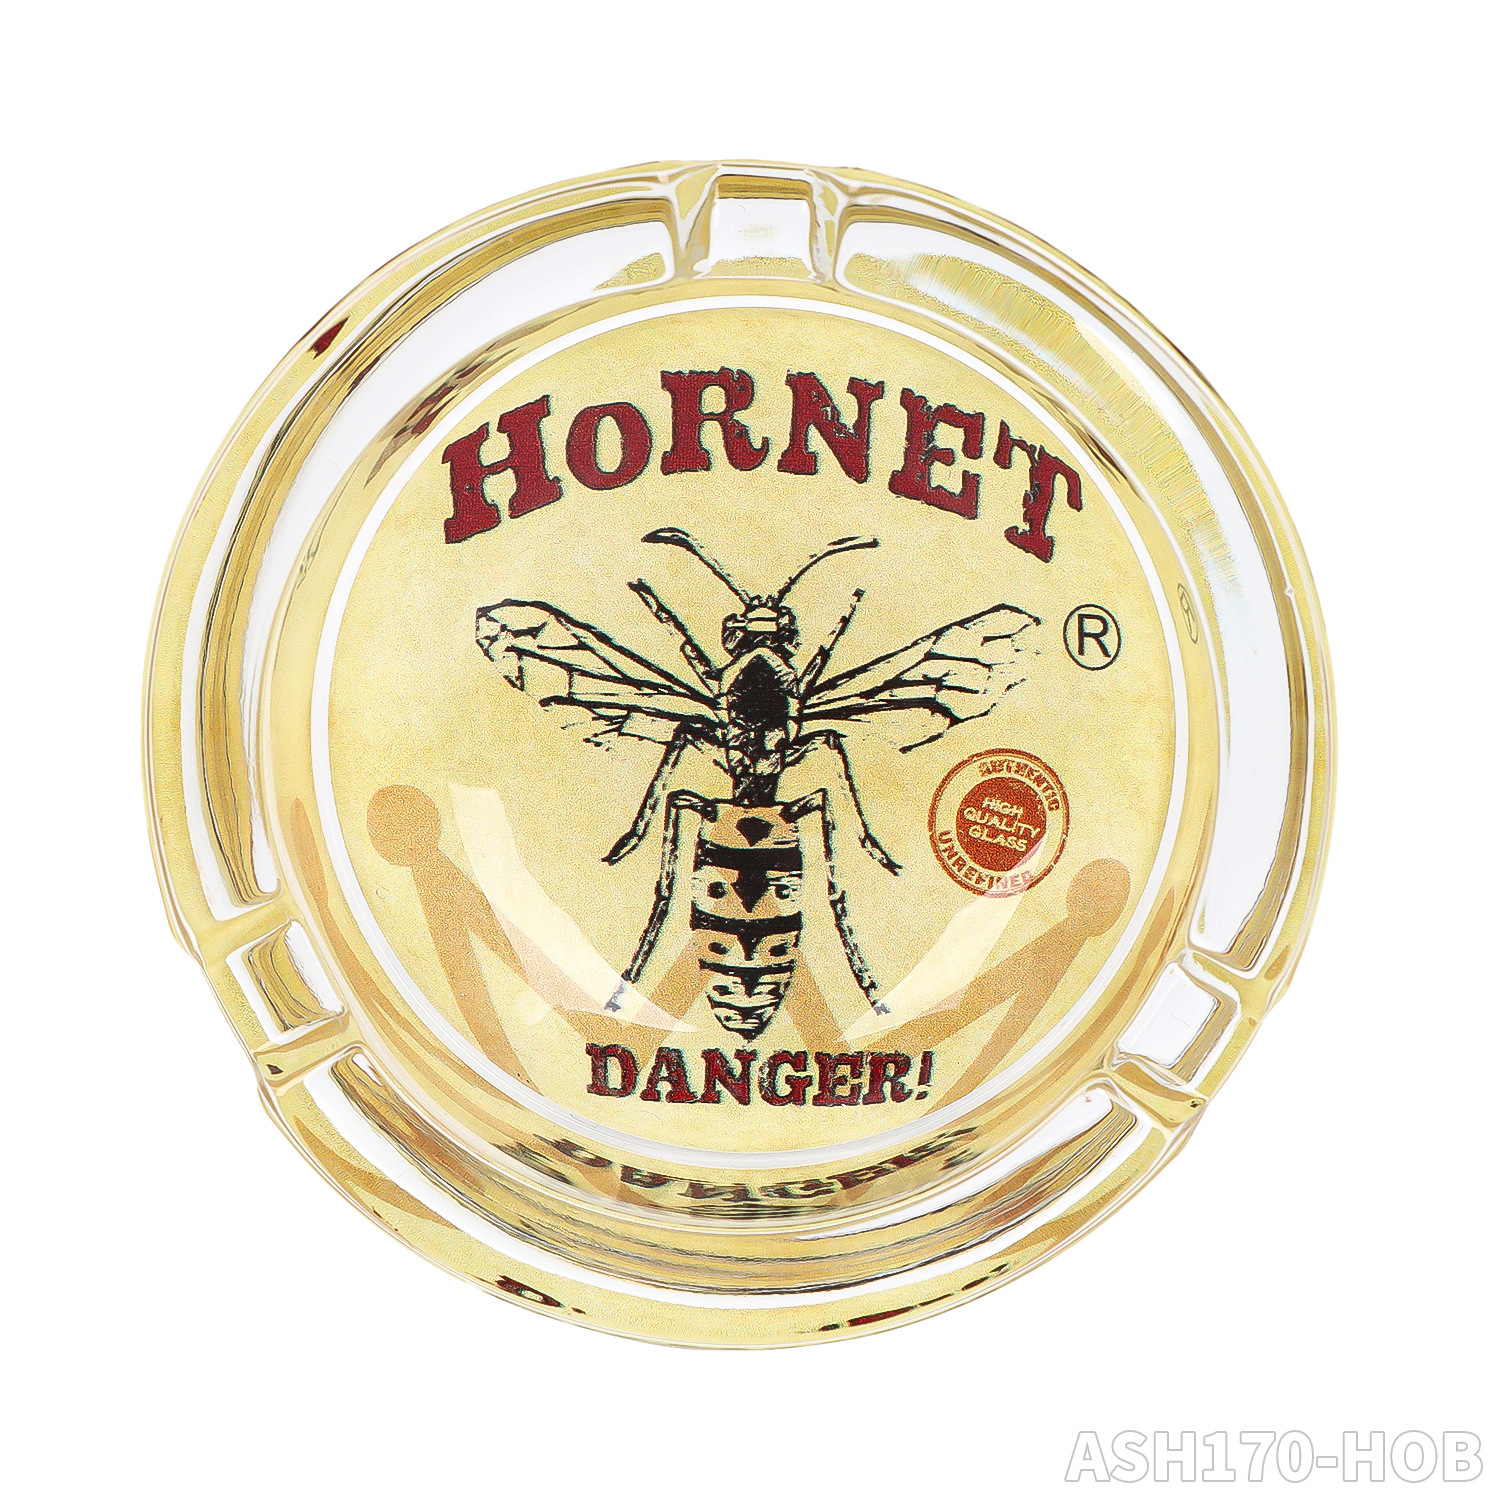 Hornet glas askfat rökning tillbehör tydlig färgglad askfat tecknad rund fyrkantig askfack för tobaks cigarett hem ört dekoration